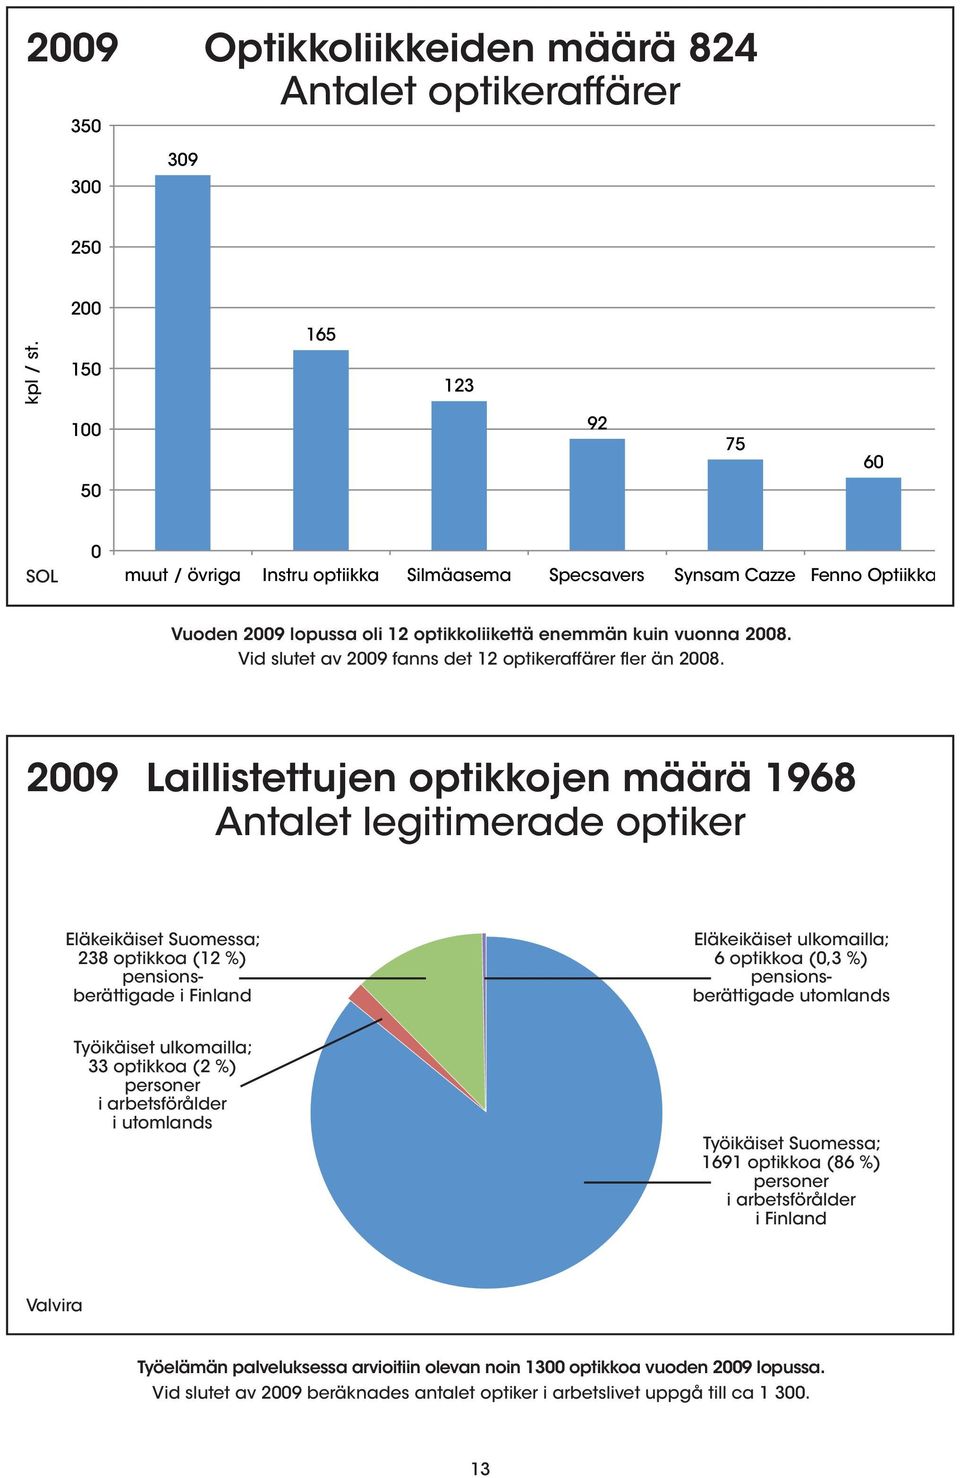 Vid slutet av 2009 fanns det 12 optikeraffärer fler än 2008.